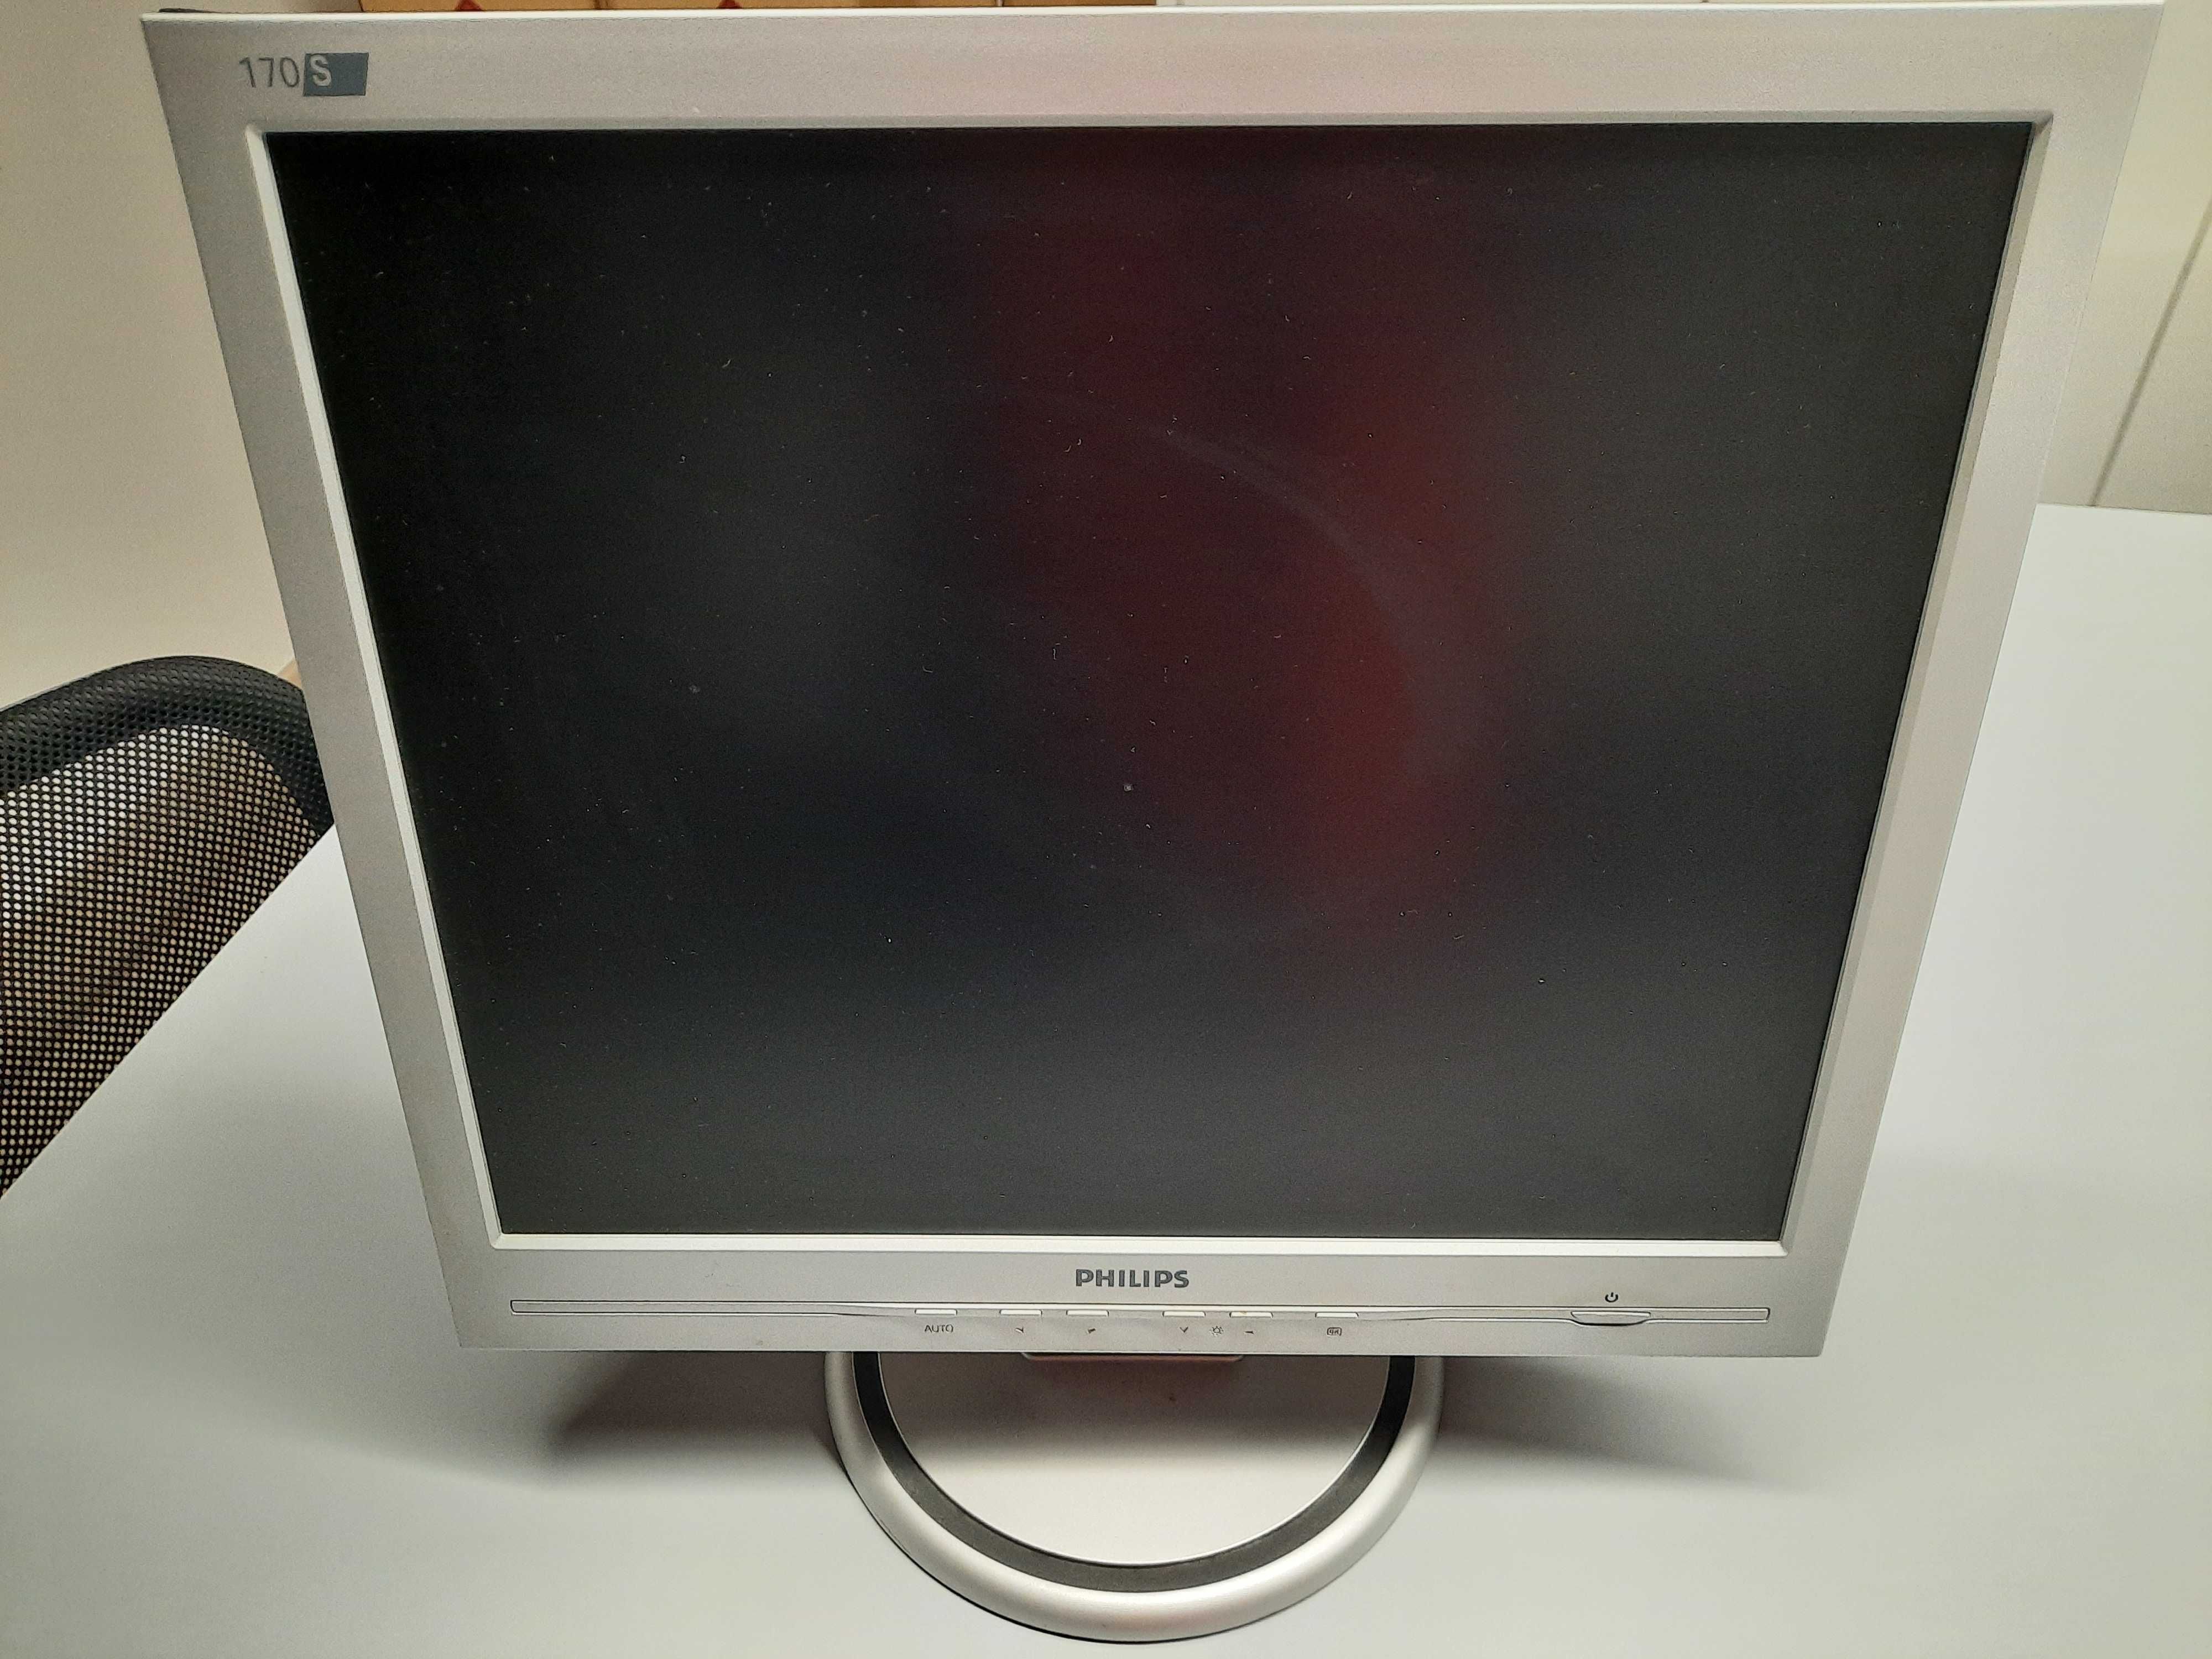 Monitor Philips 170s